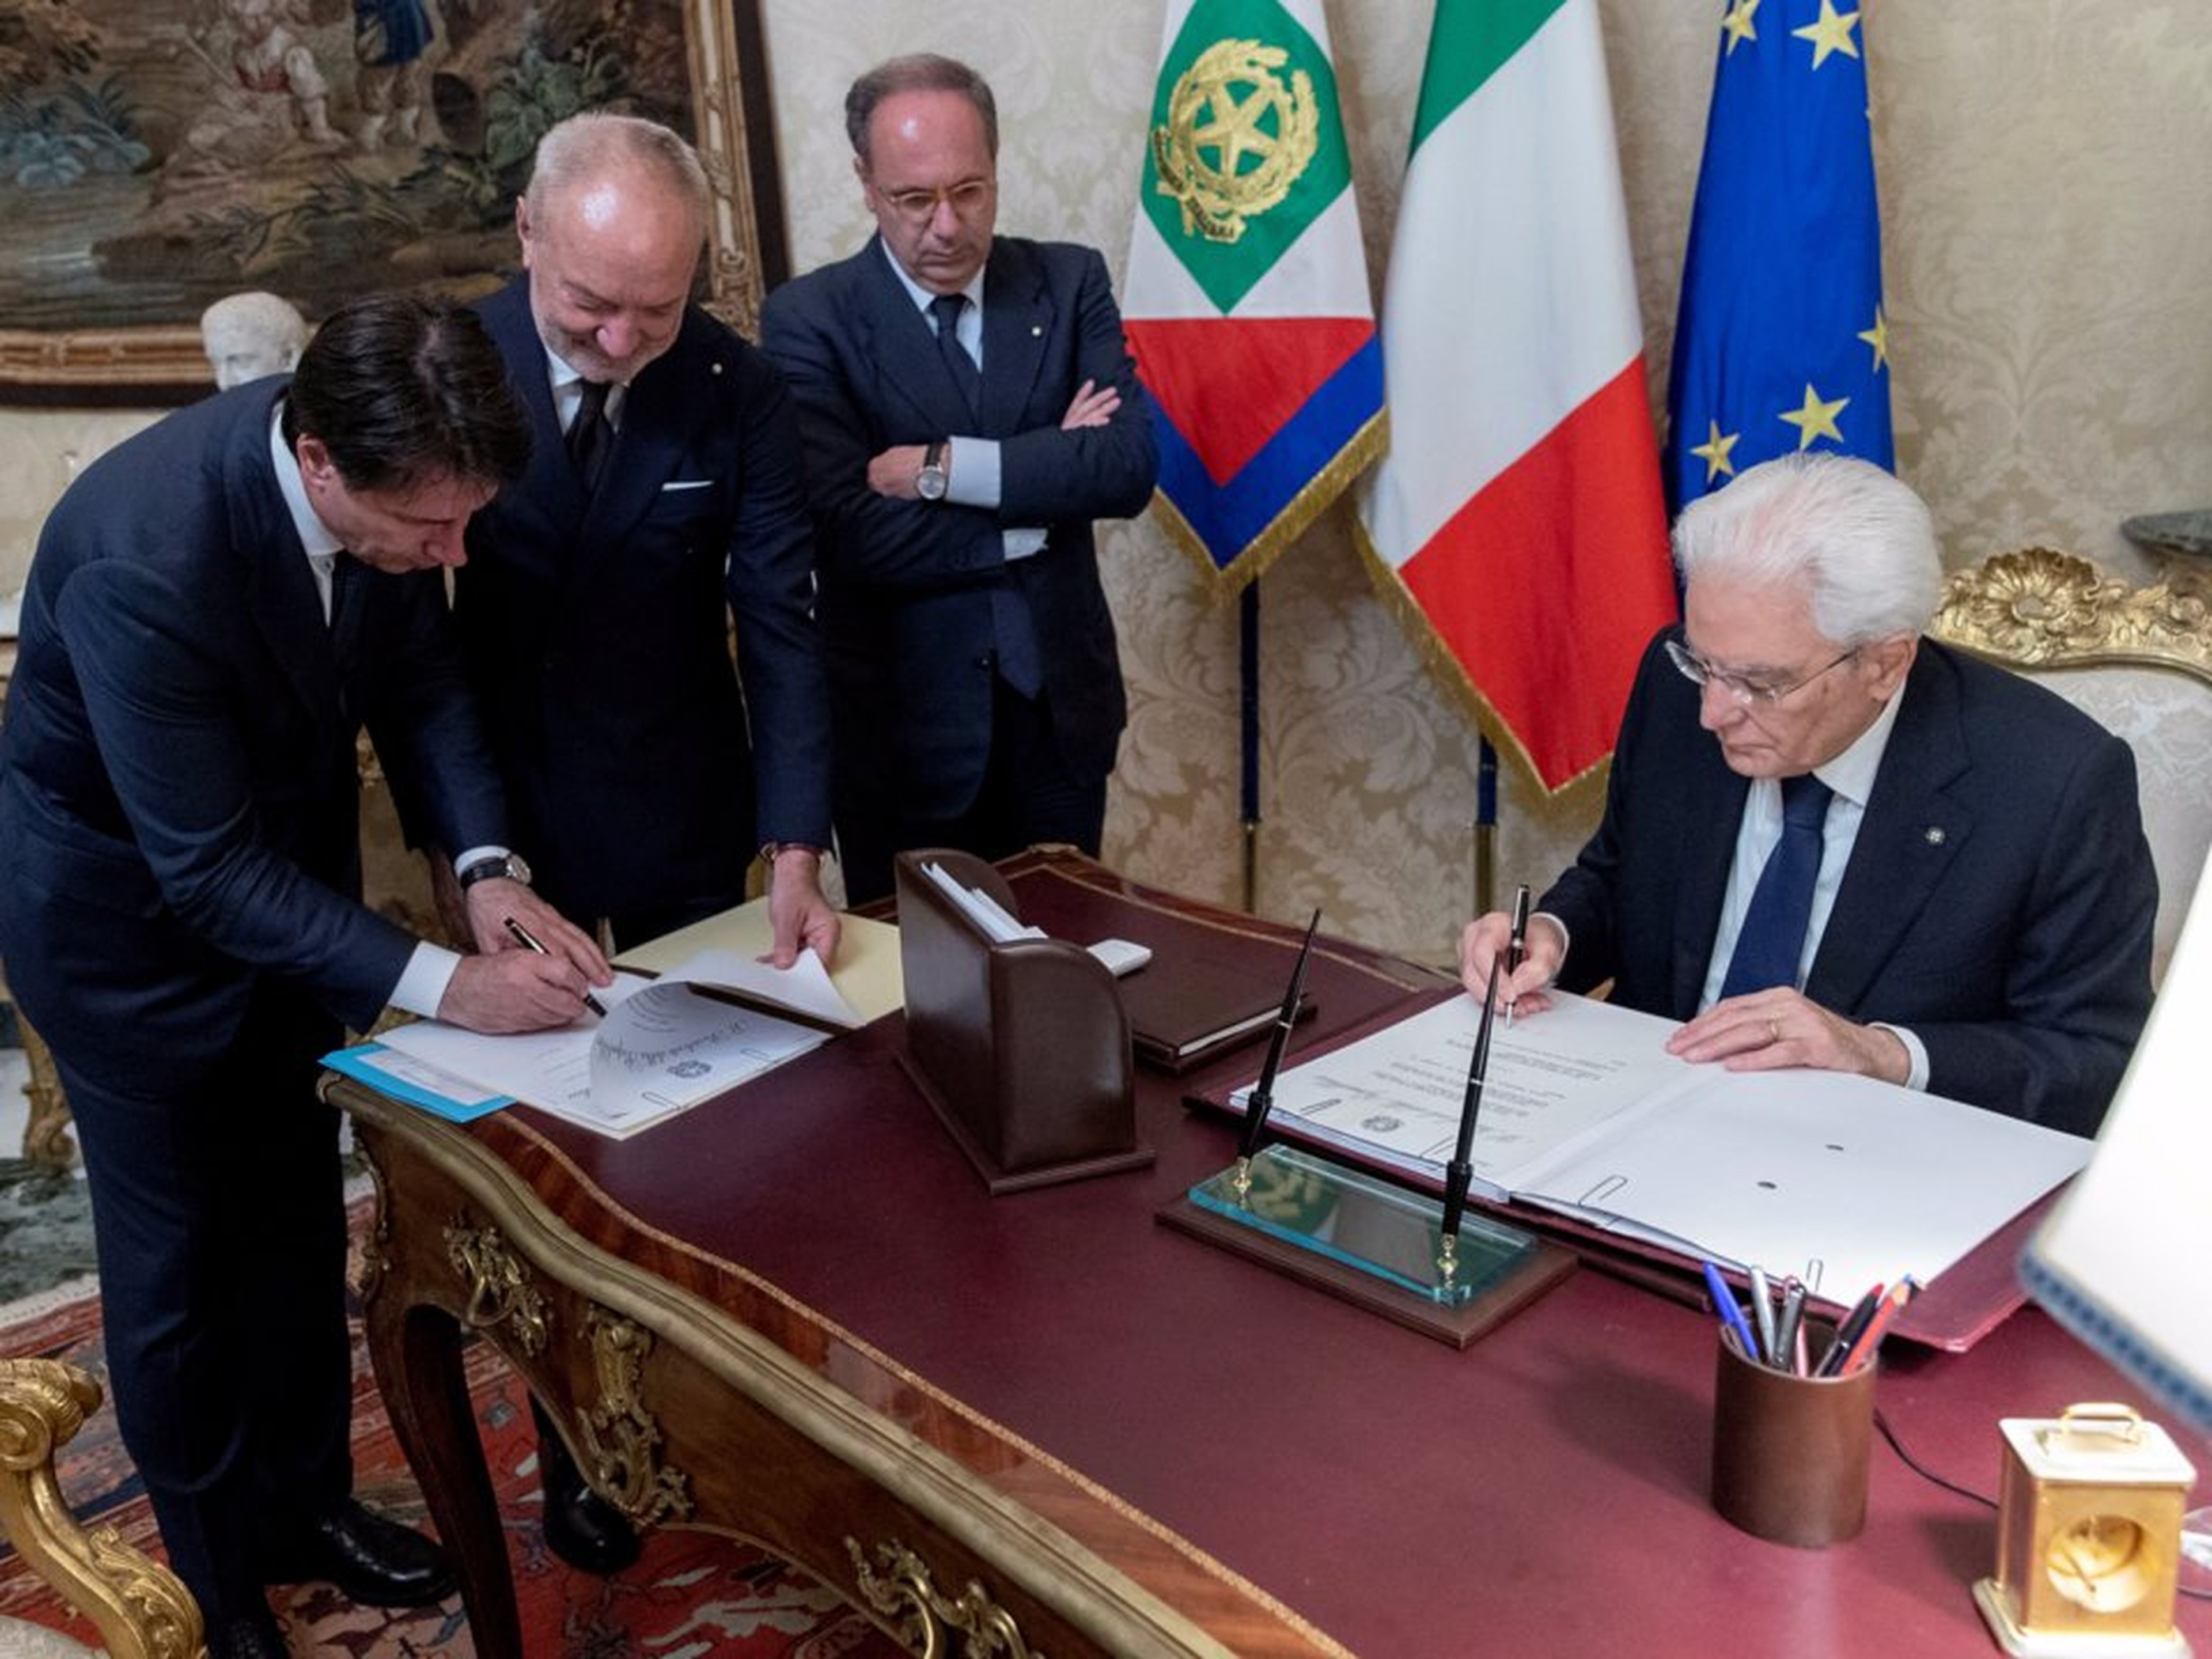 El primer ministro designado de Italia, Giuseppe Conte, y el presidente italiano Sergio Mattarella firman documentos en el Palacio del Quirinal en Roma, Italia, el 31 de mayo de 2018.